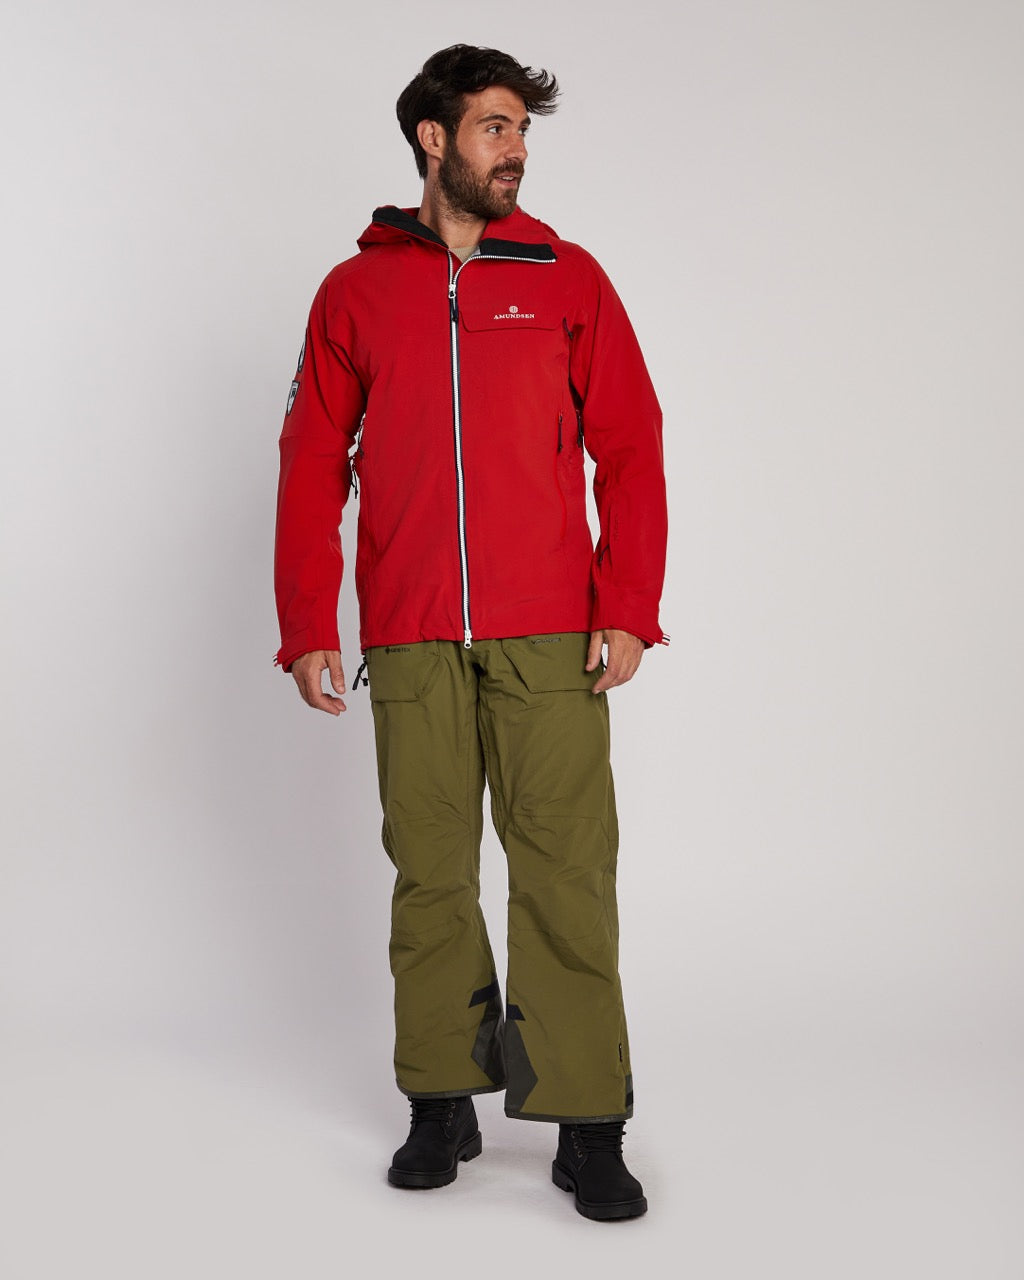 Amundsen Men's Peak Panther Ski Jacket in Red